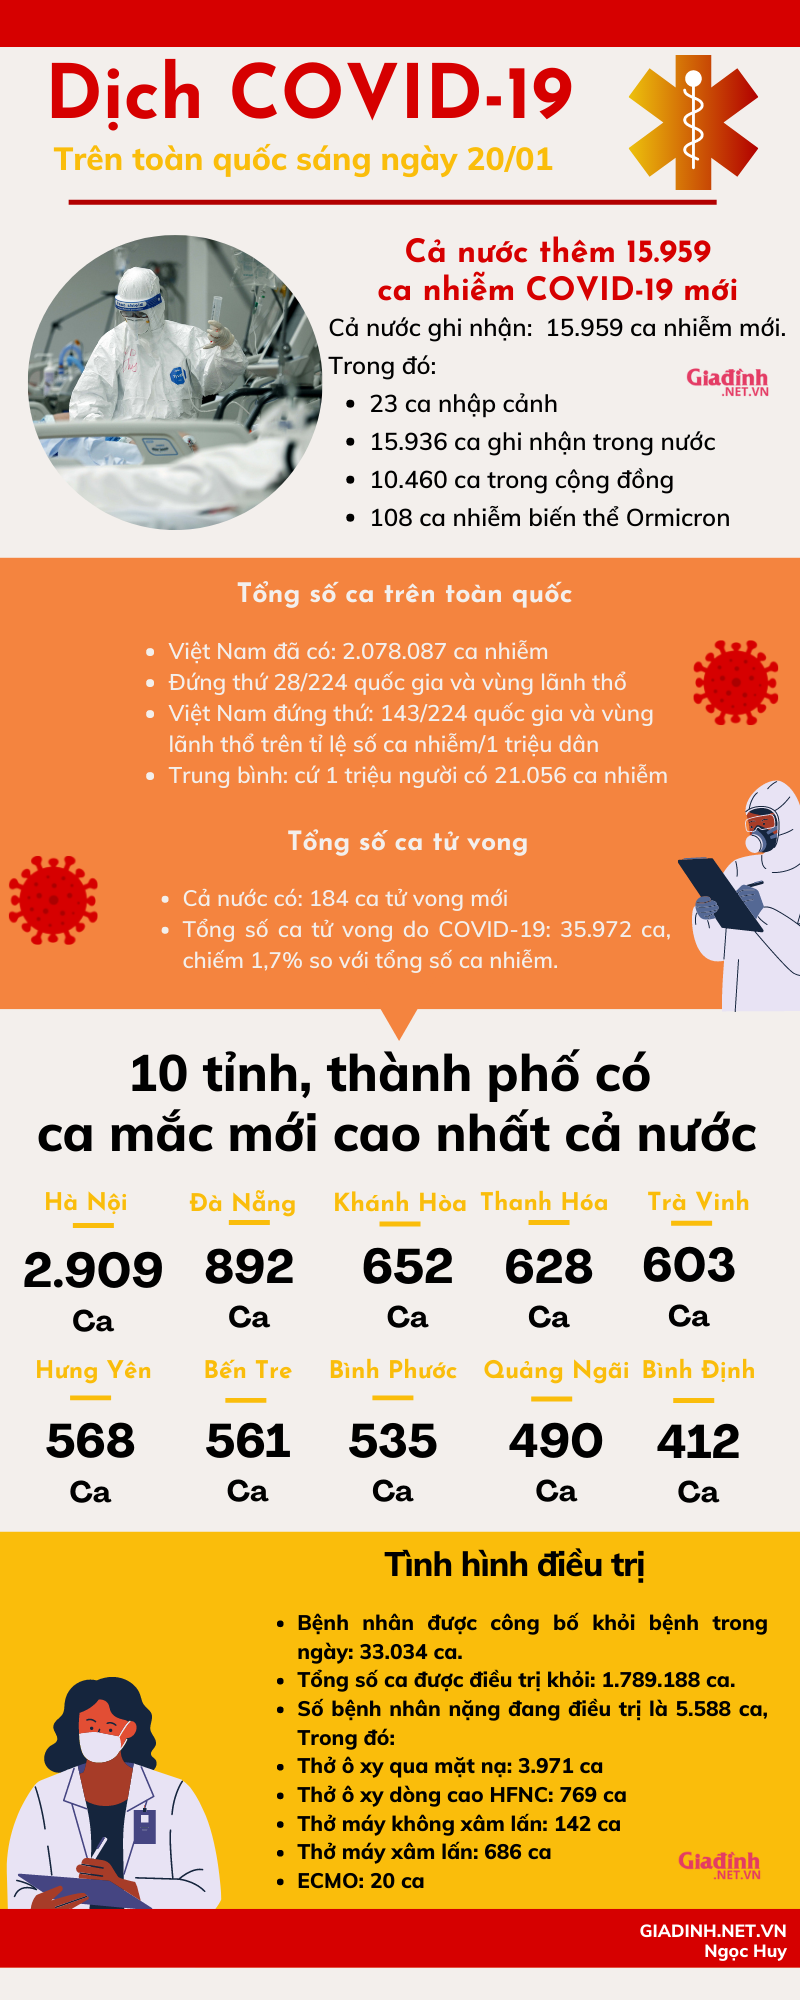 Sáng 20/01: Việt Nam đã có 108 ca nhiễm biến thể Ormicron - Ảnh 1.